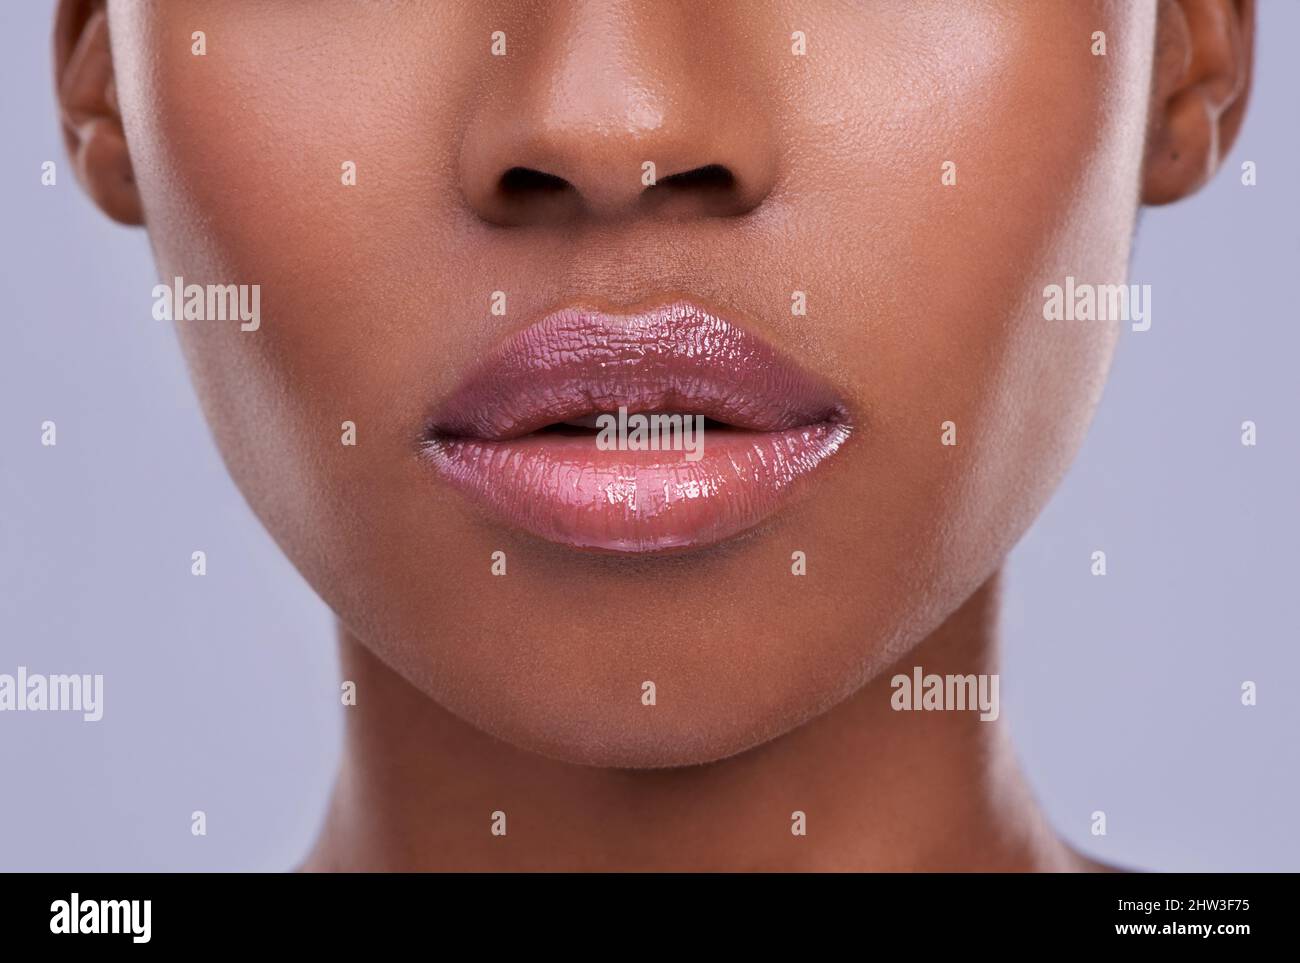 Luziöse Lippen. Ausgeschnittene Aufnahme einer jungen Frau vor einem violetten Hintergrund. Stockfoto